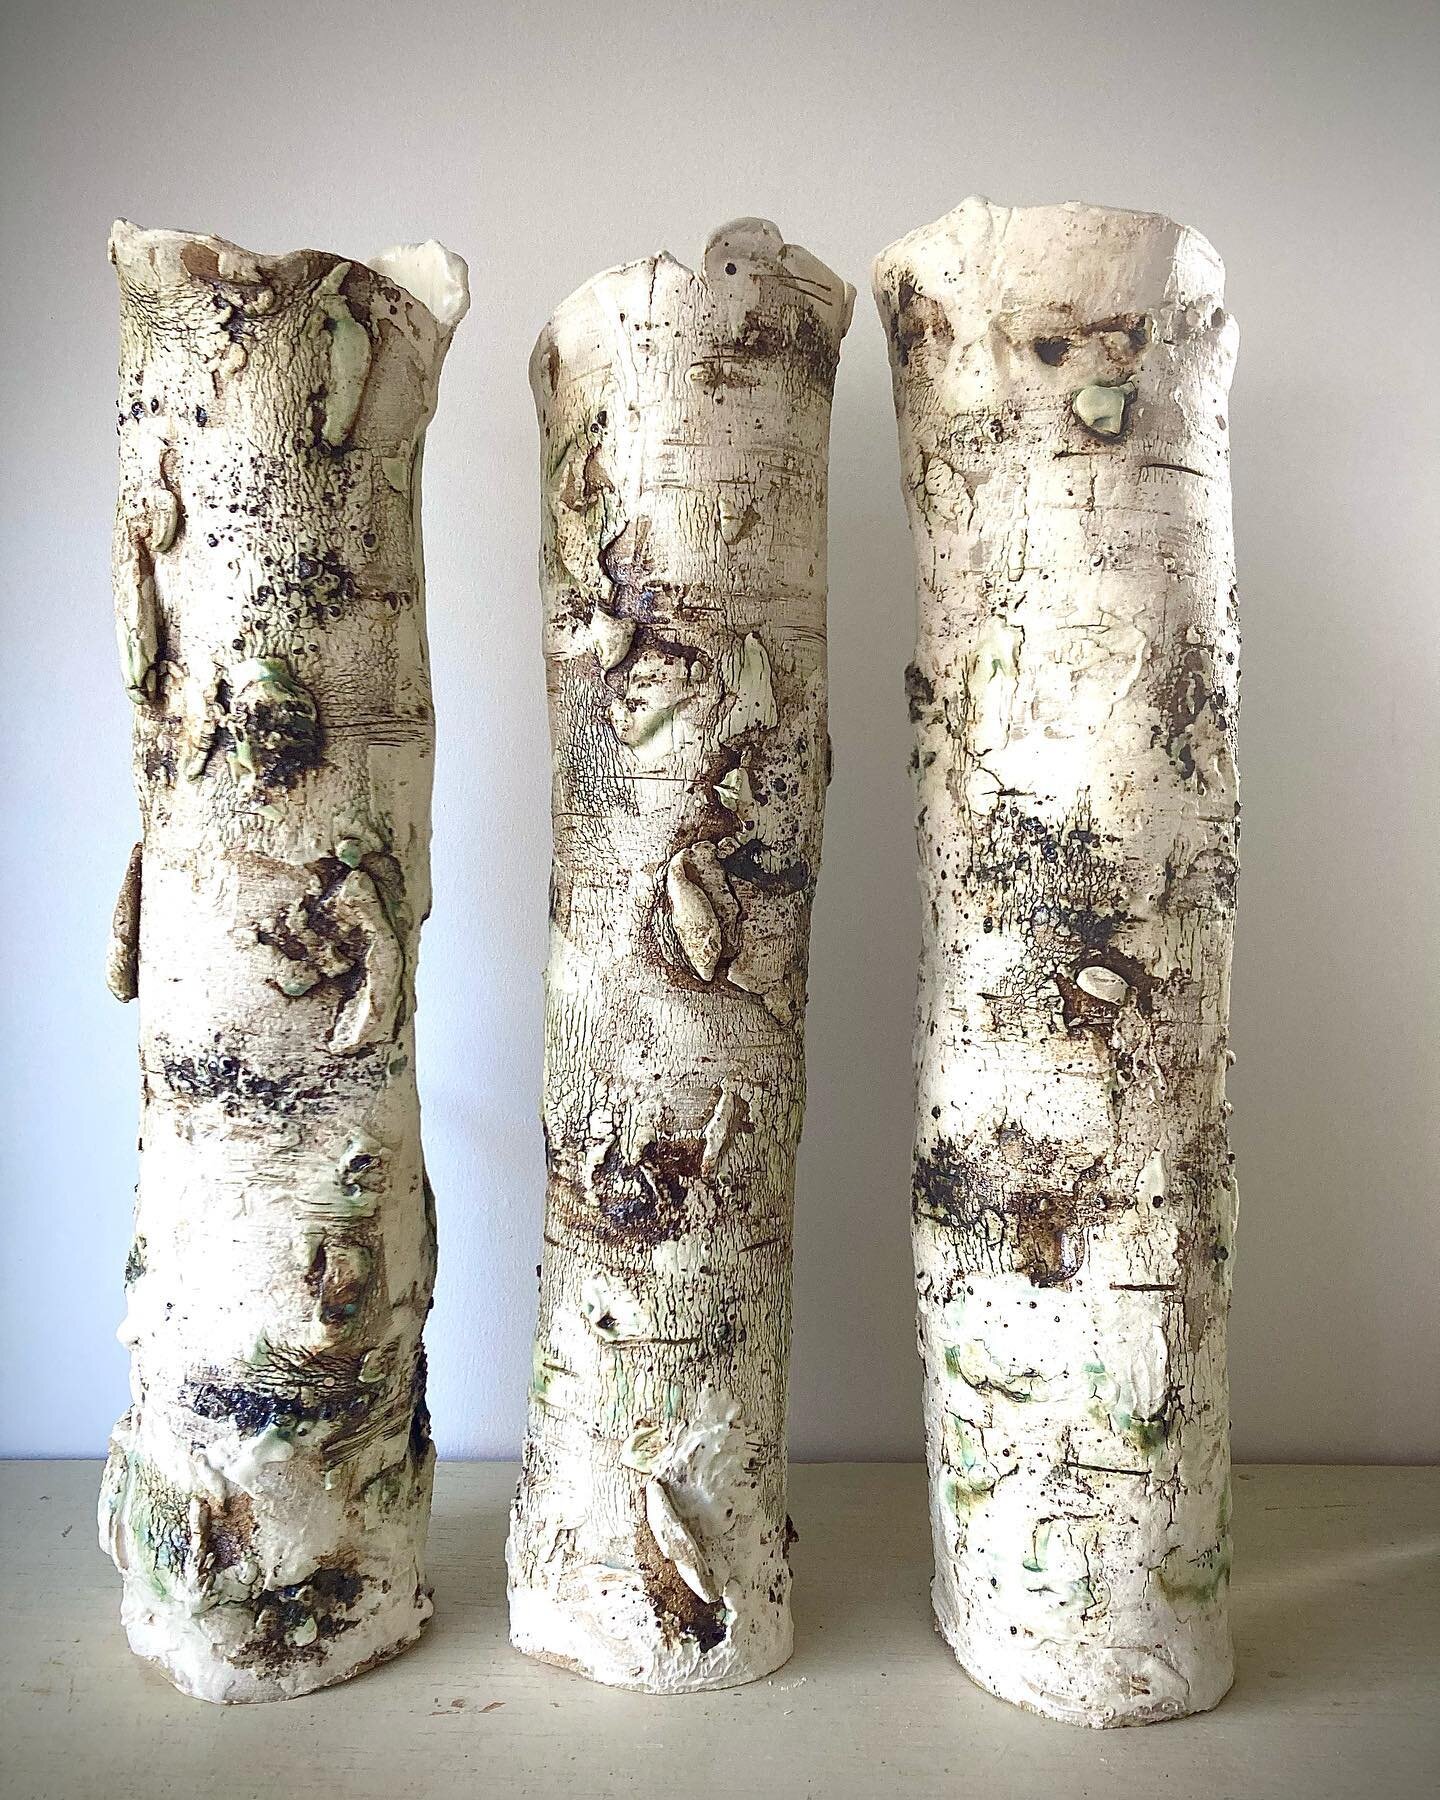 Trio of tall Silver Birch- just out of my new kiln. #silverbirch #tallceramicvase #clay #devonpotter @devon_artist_network  #handmadeindevon @totnespotters #claytexture #uniqueceramics #visitdevon